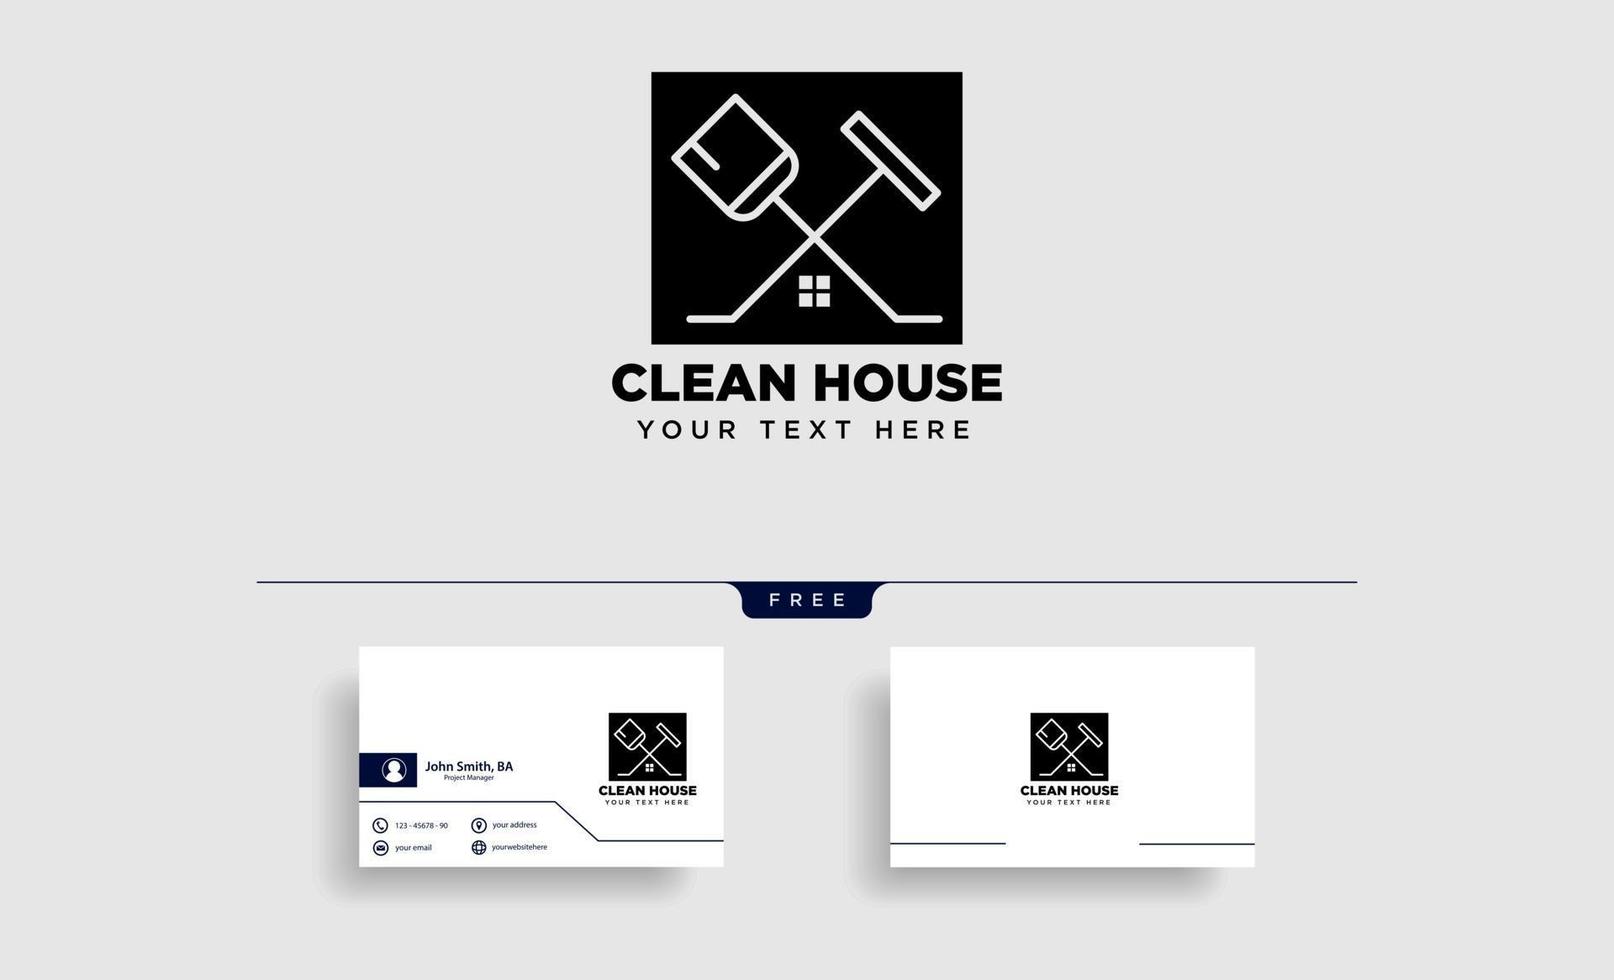 schoonmaak huis eco logo sjabloon vector illustratie pictogram element geïsoleerde vector